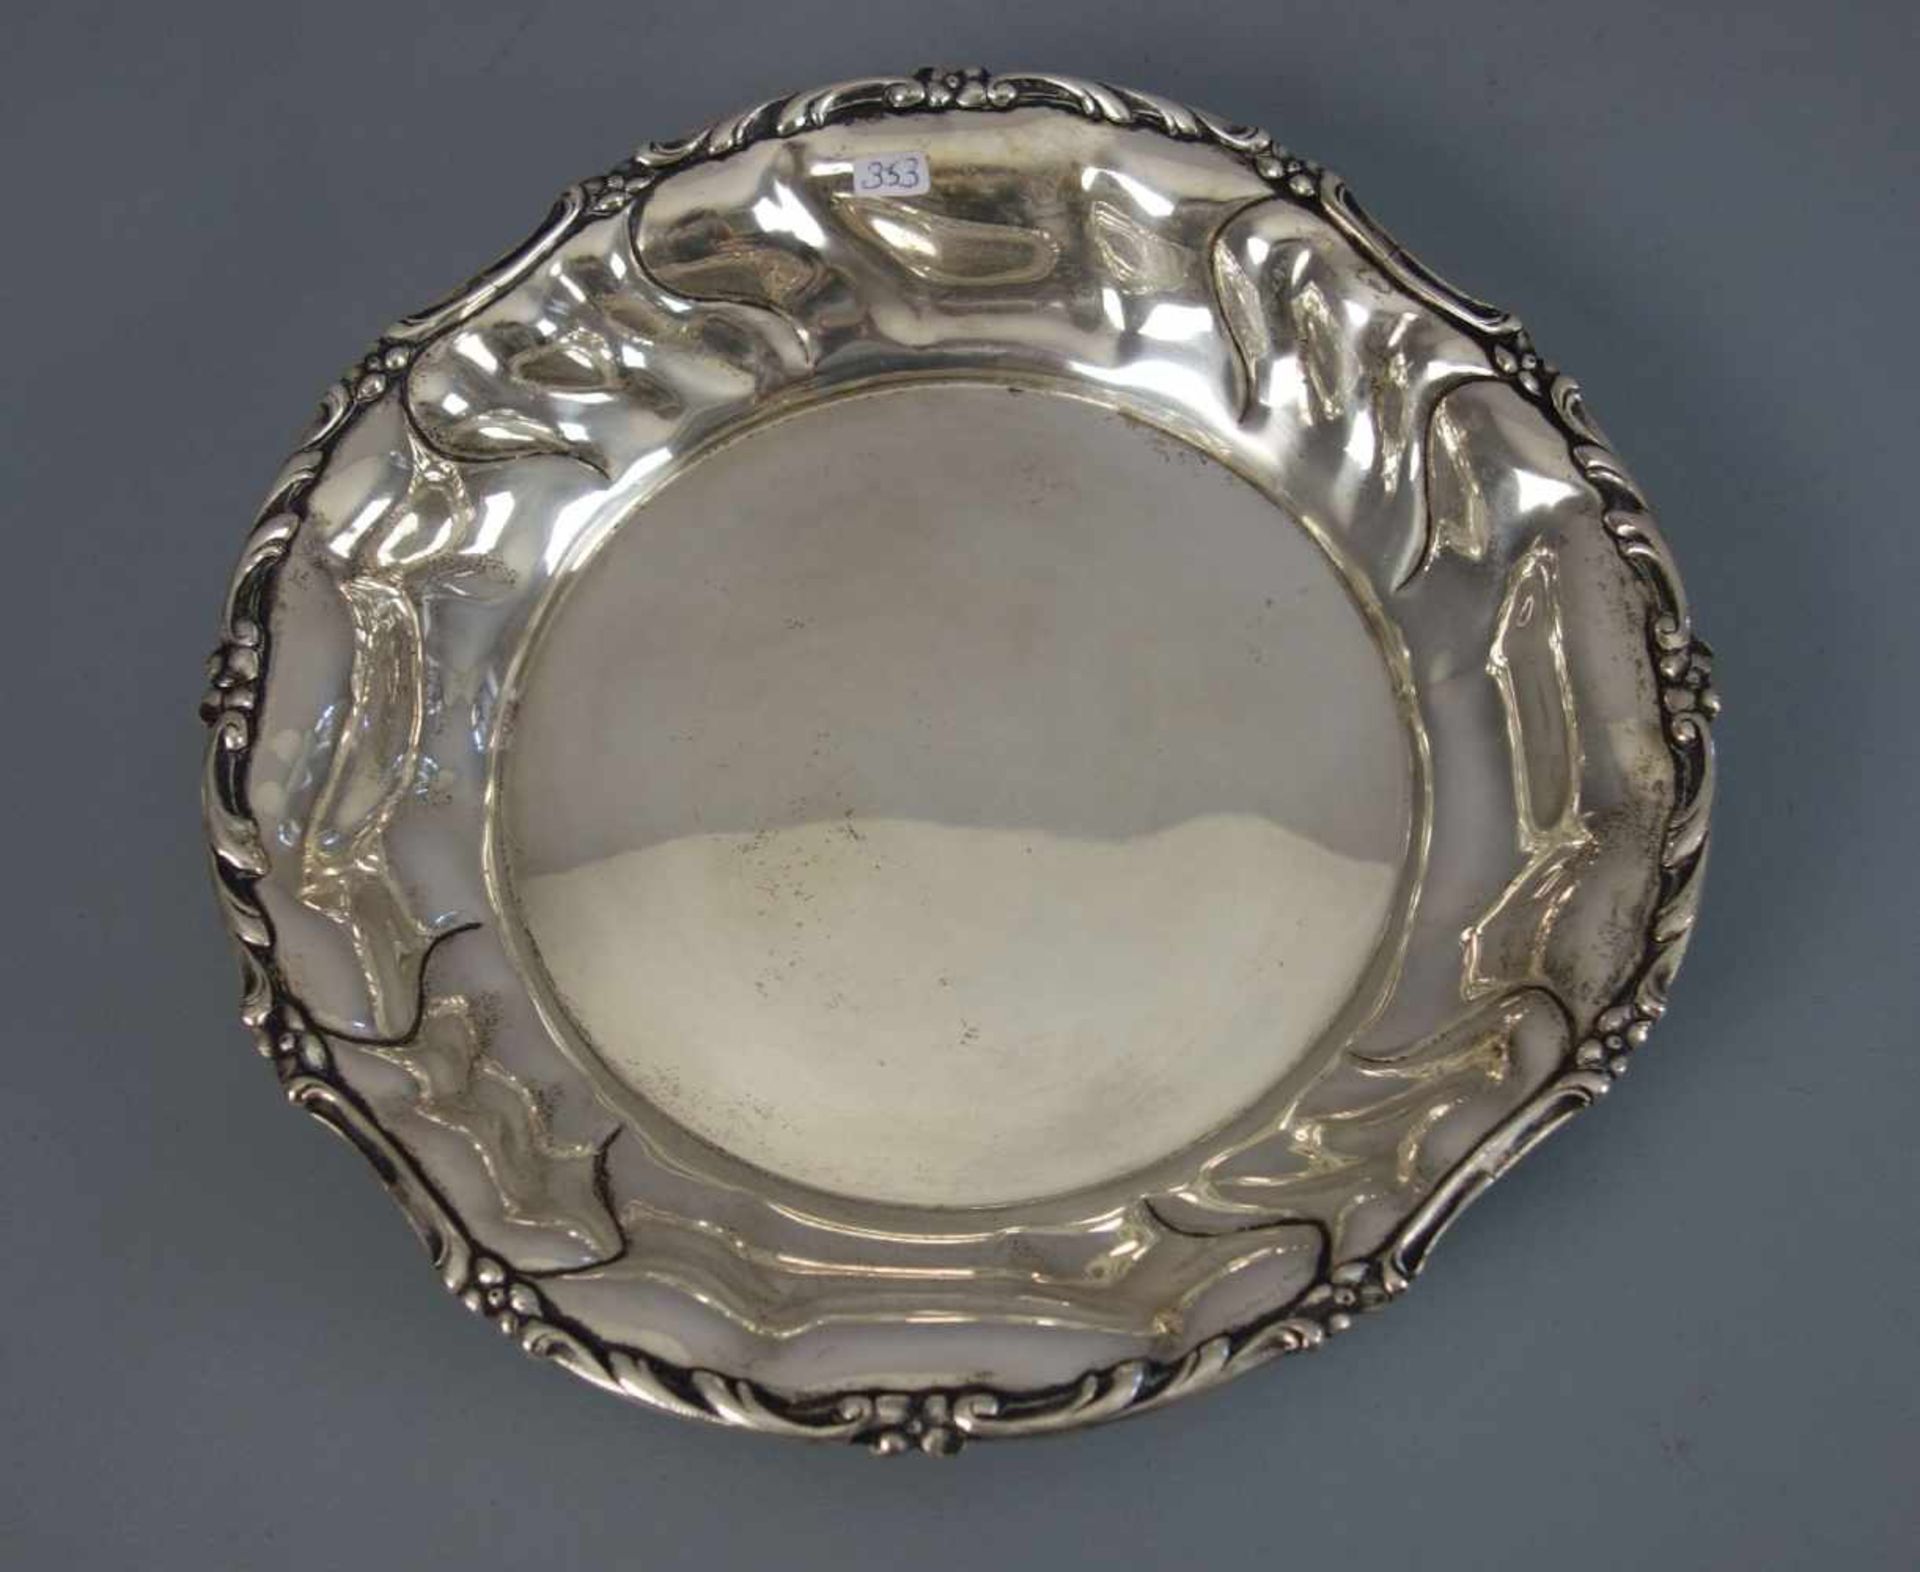 SILBERNE SCHALE / silver bowl, 800er Silber (625 g), gepunzt mit Halbmond, Krone, Feingehaltsangabe,